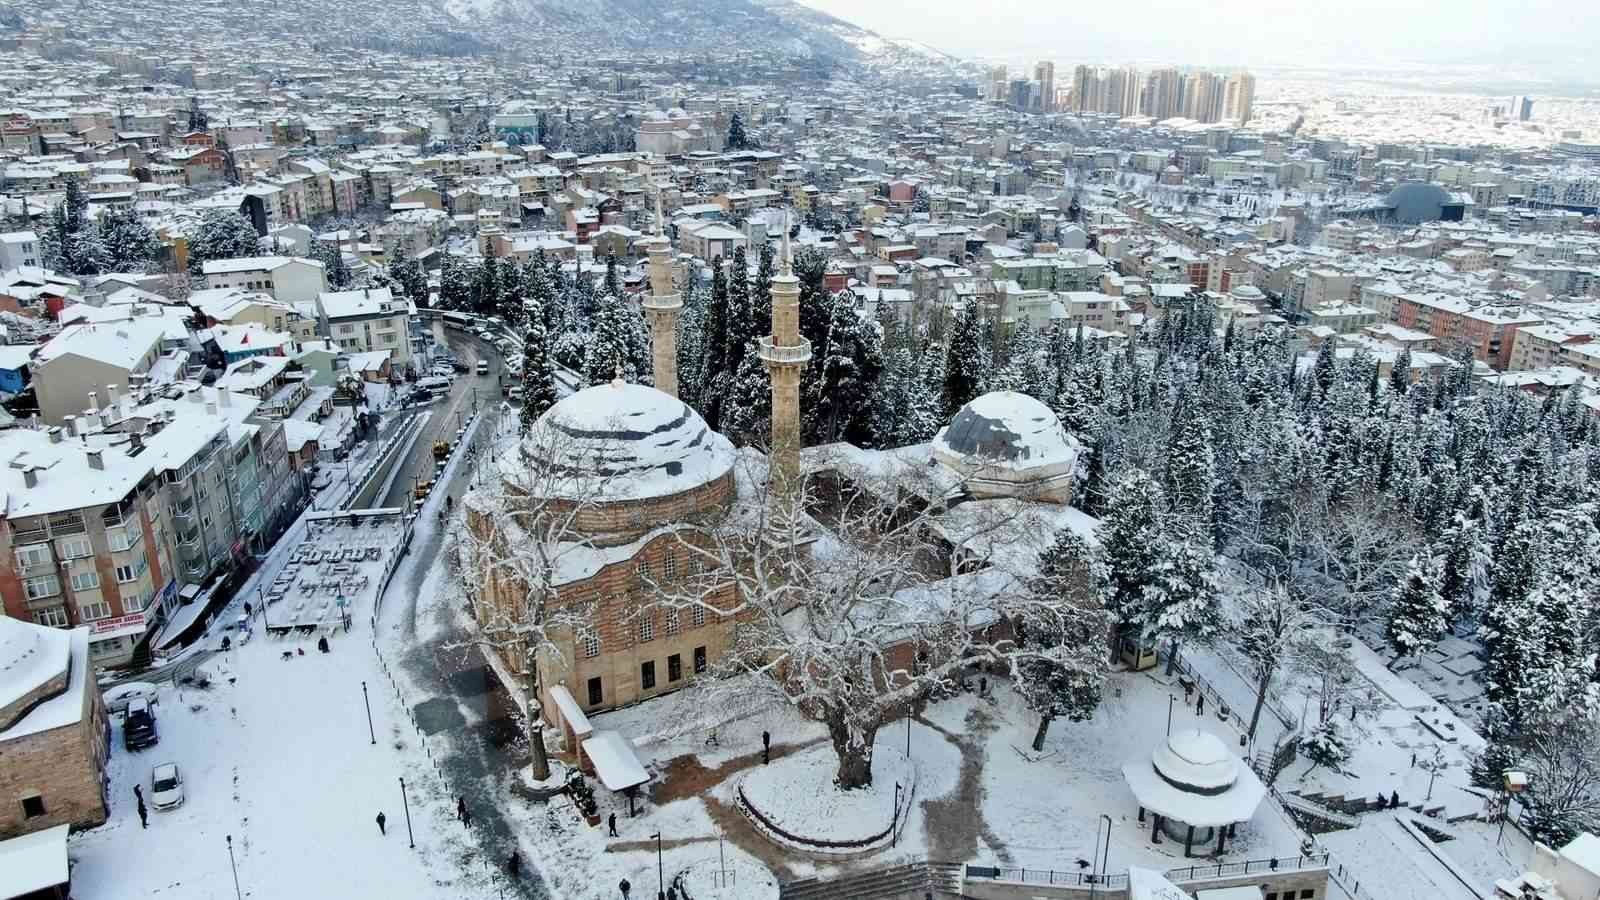 Bursa Büyükşehir Belediyesi, ‘bu gece ve yarın etkili olması beklenen kar yağışı ile buzlanma olaylarına karşı’ kış lastiği bulunmayan araçlar ...